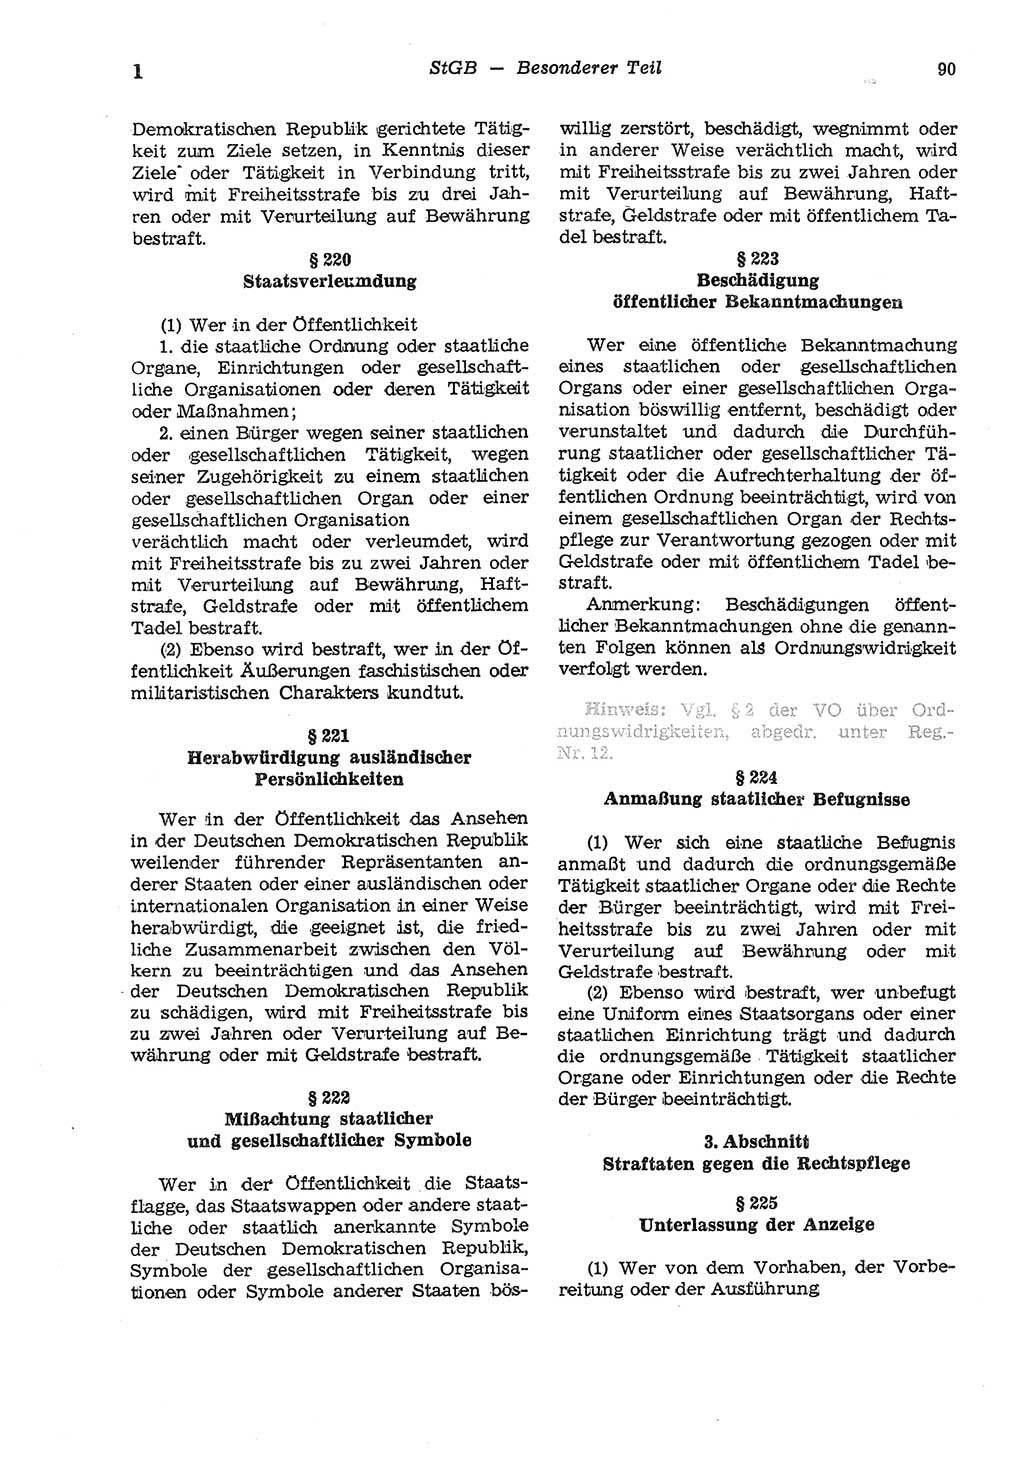 Strafgesetzbuch (StGB) der Deutschen Demokratischen Republik (DDR) und angrenzende Gesetze und Bestimmungen 1975, Seite 90 (StGB DDR Ges. Best. 1975, S. 90)